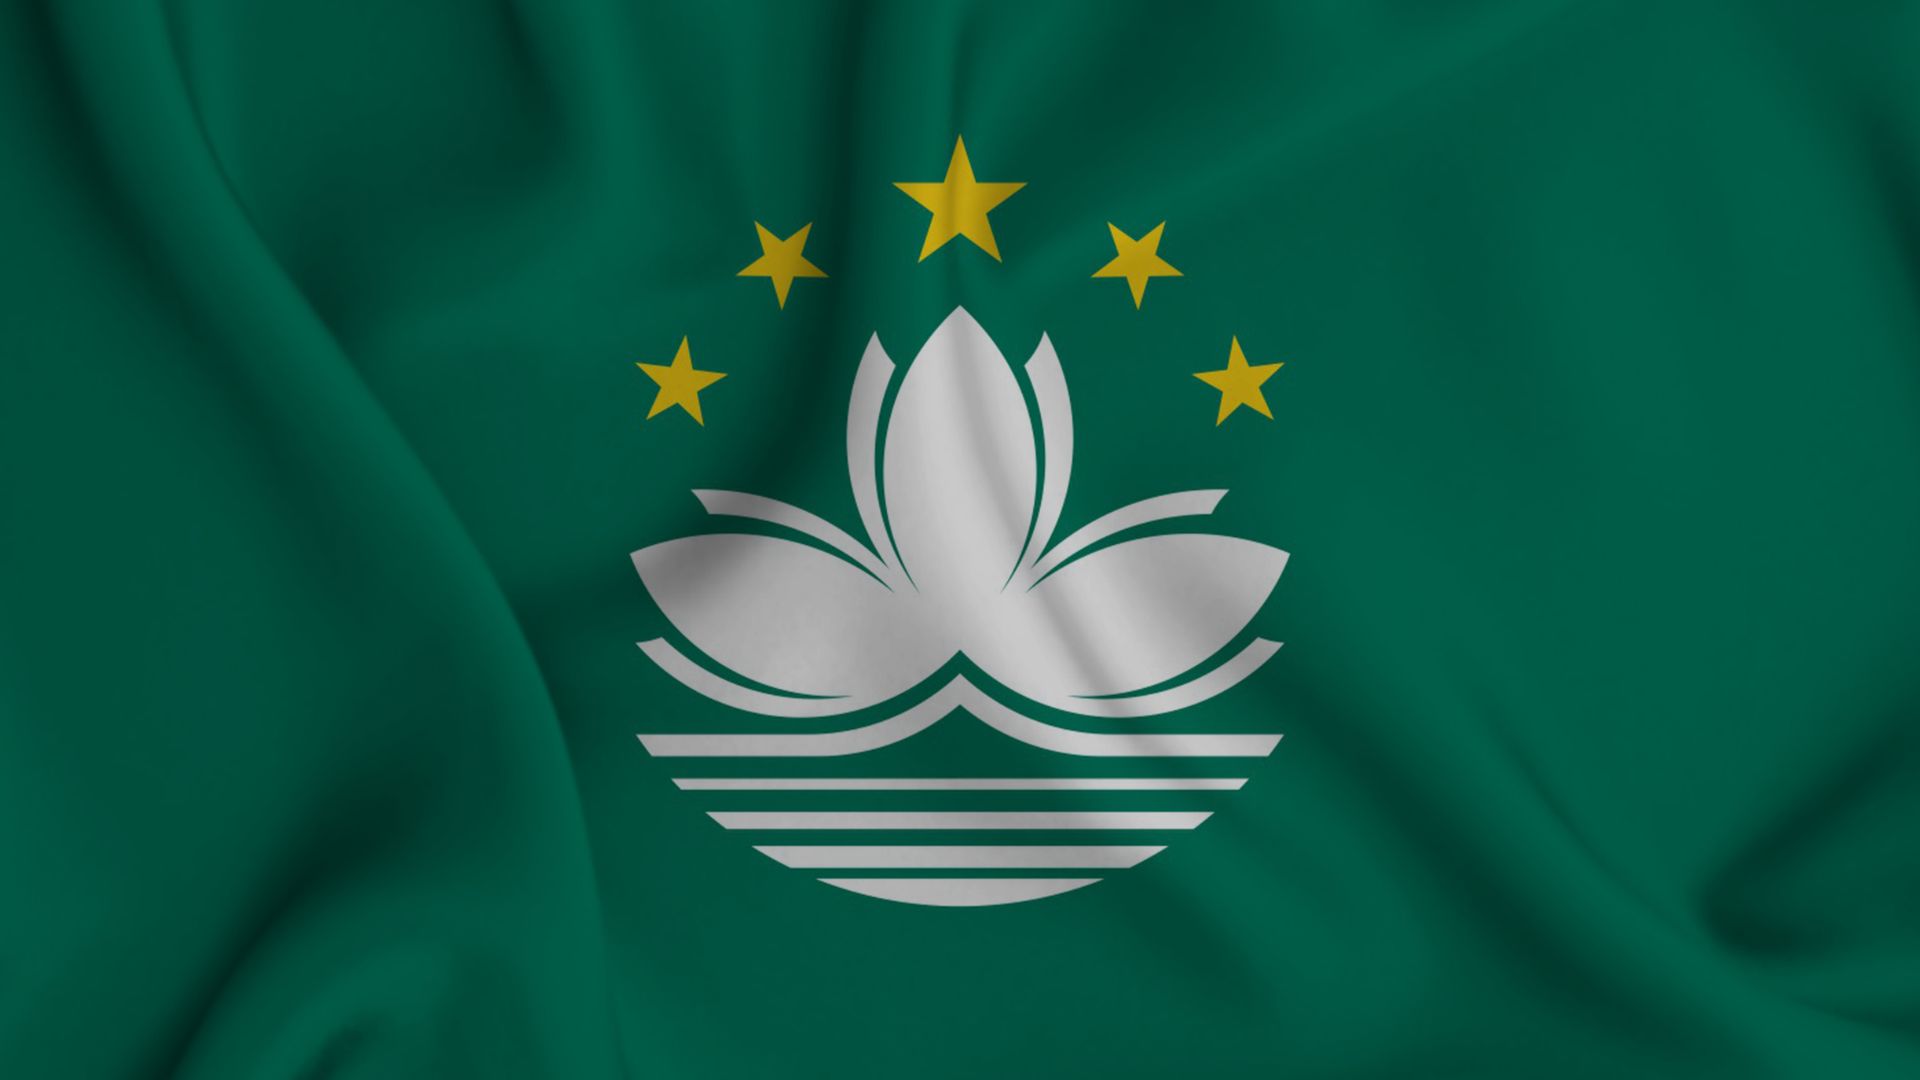 A bandeira do Macau tem a cor é verde, tendo ao centro uma flor de lótus branca de três pétalas. Por cima da flor estão cinco estrelas e por baixo, a ponte e água do mar.